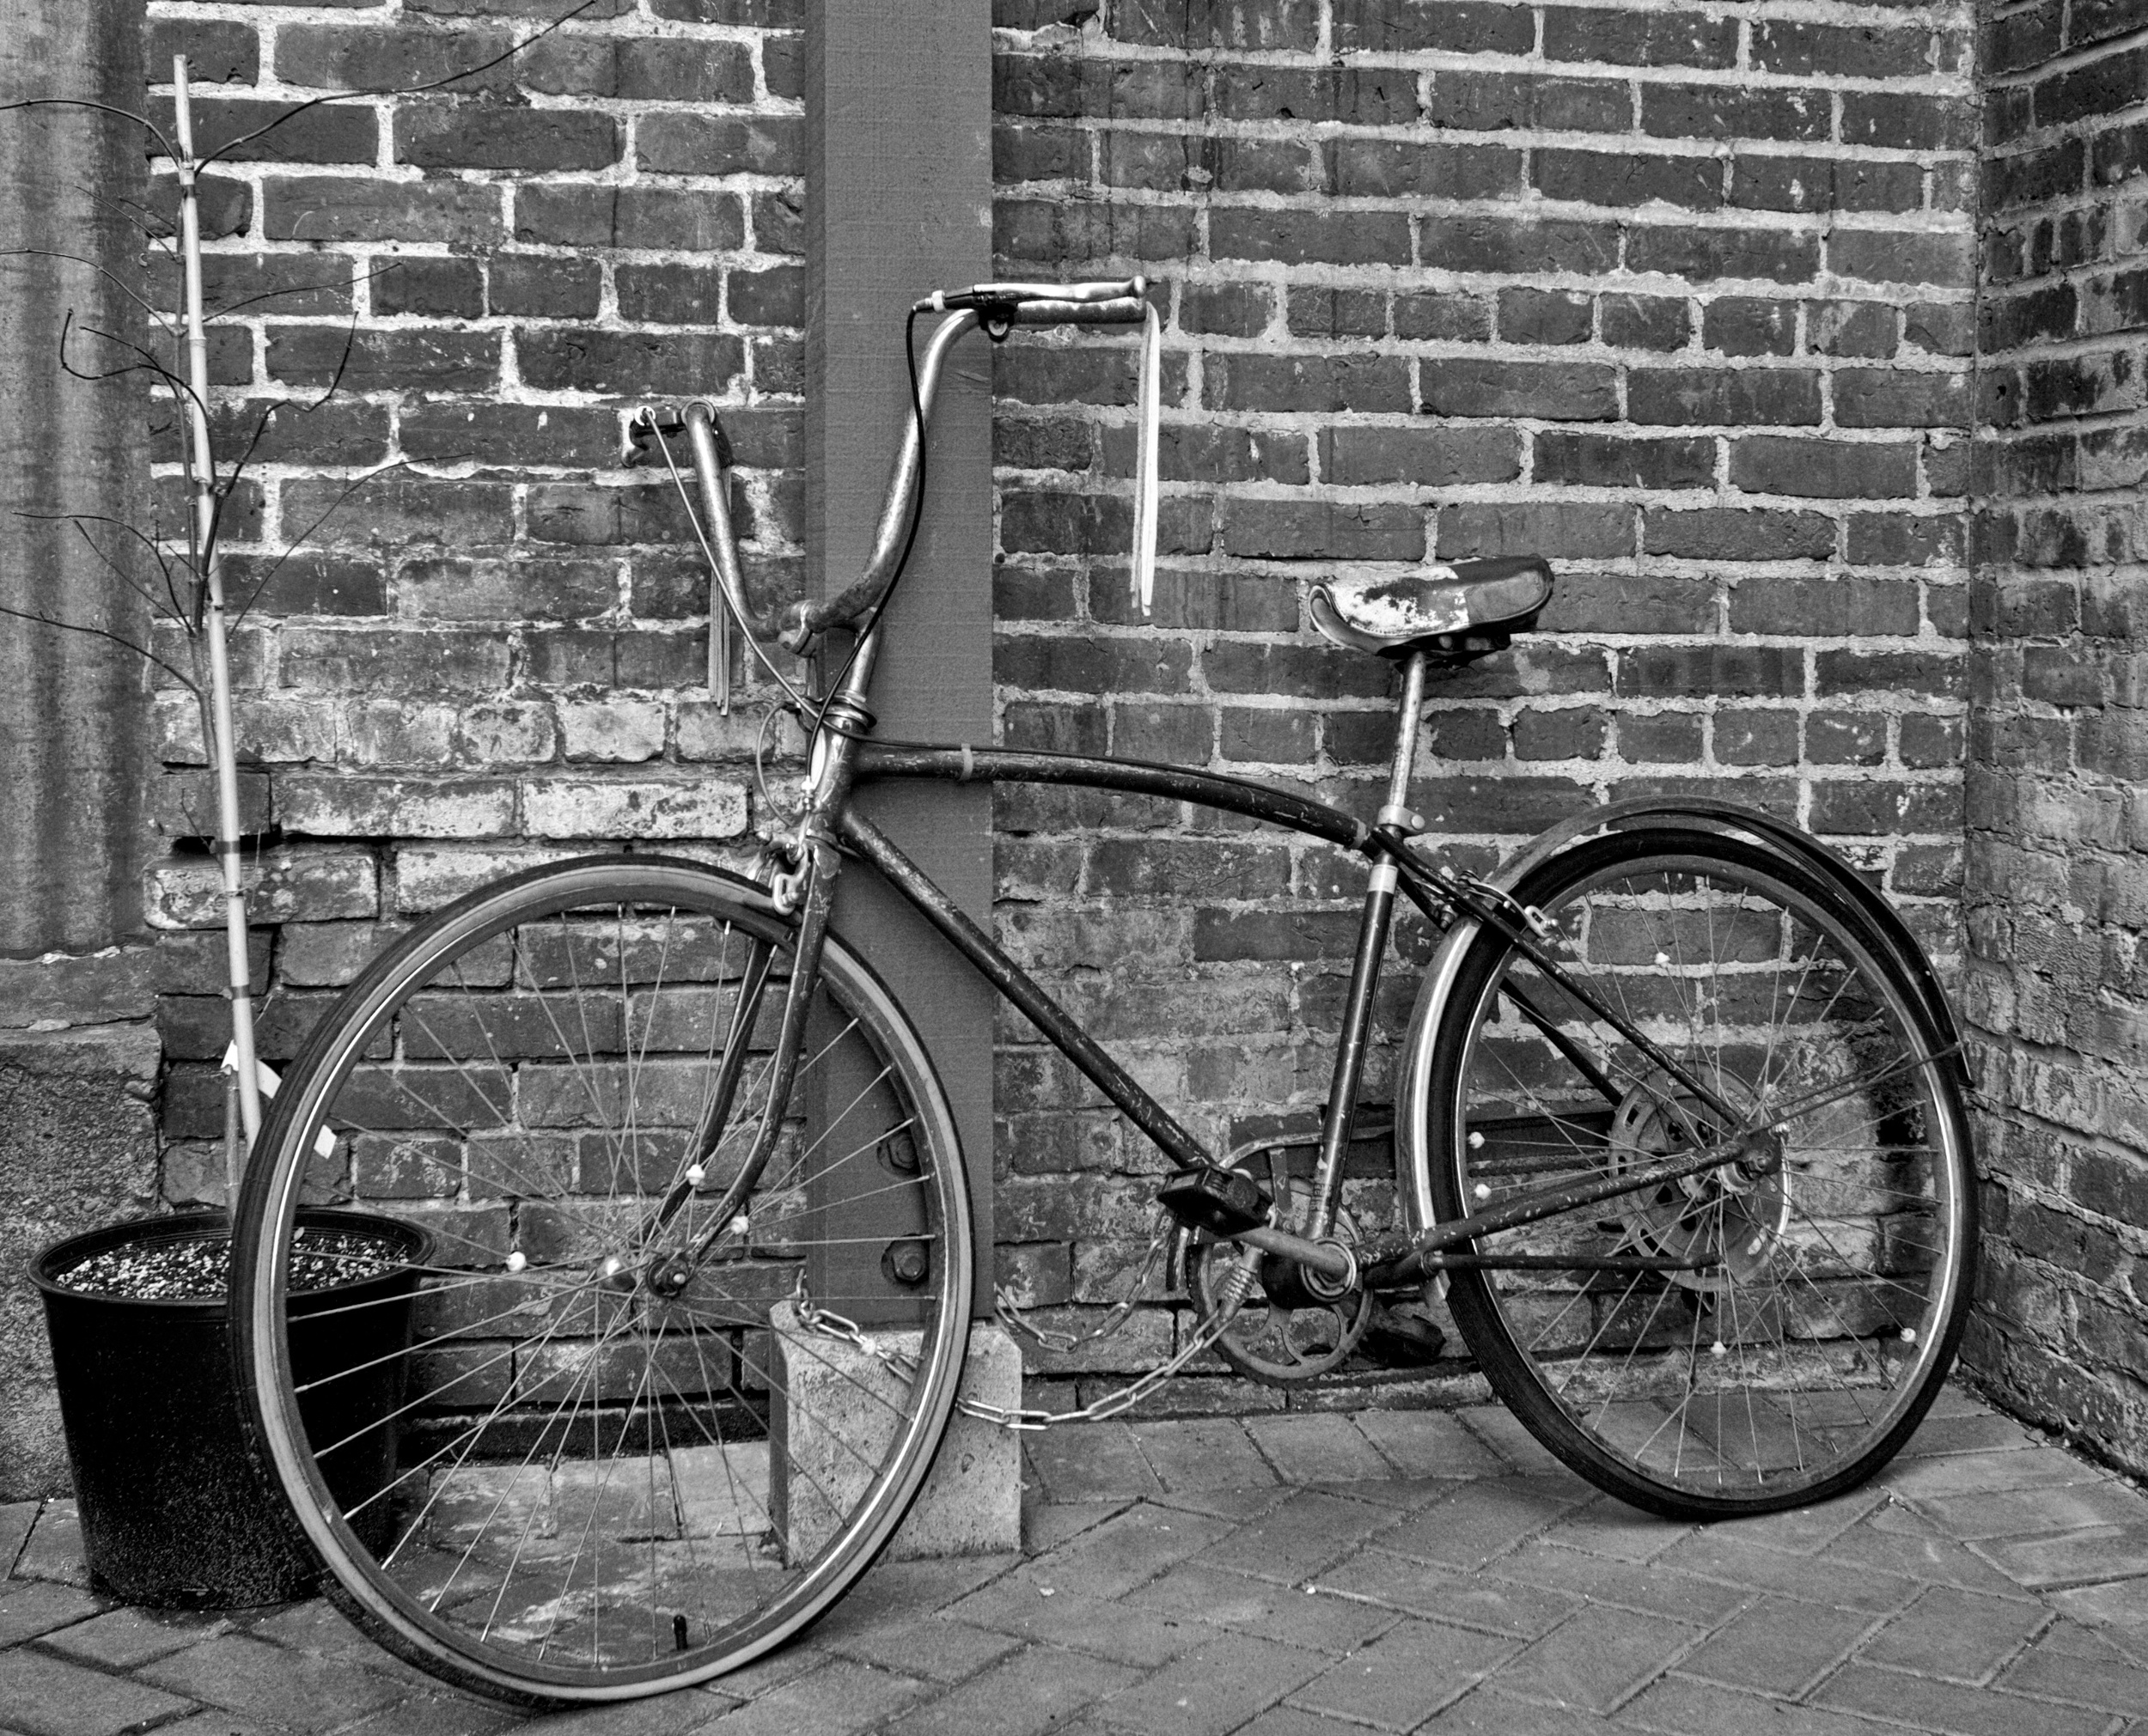 2012-02-04 at 15-14-21 Bicycle, Black & White, Bricks, Old, Street Life Urban.jpg